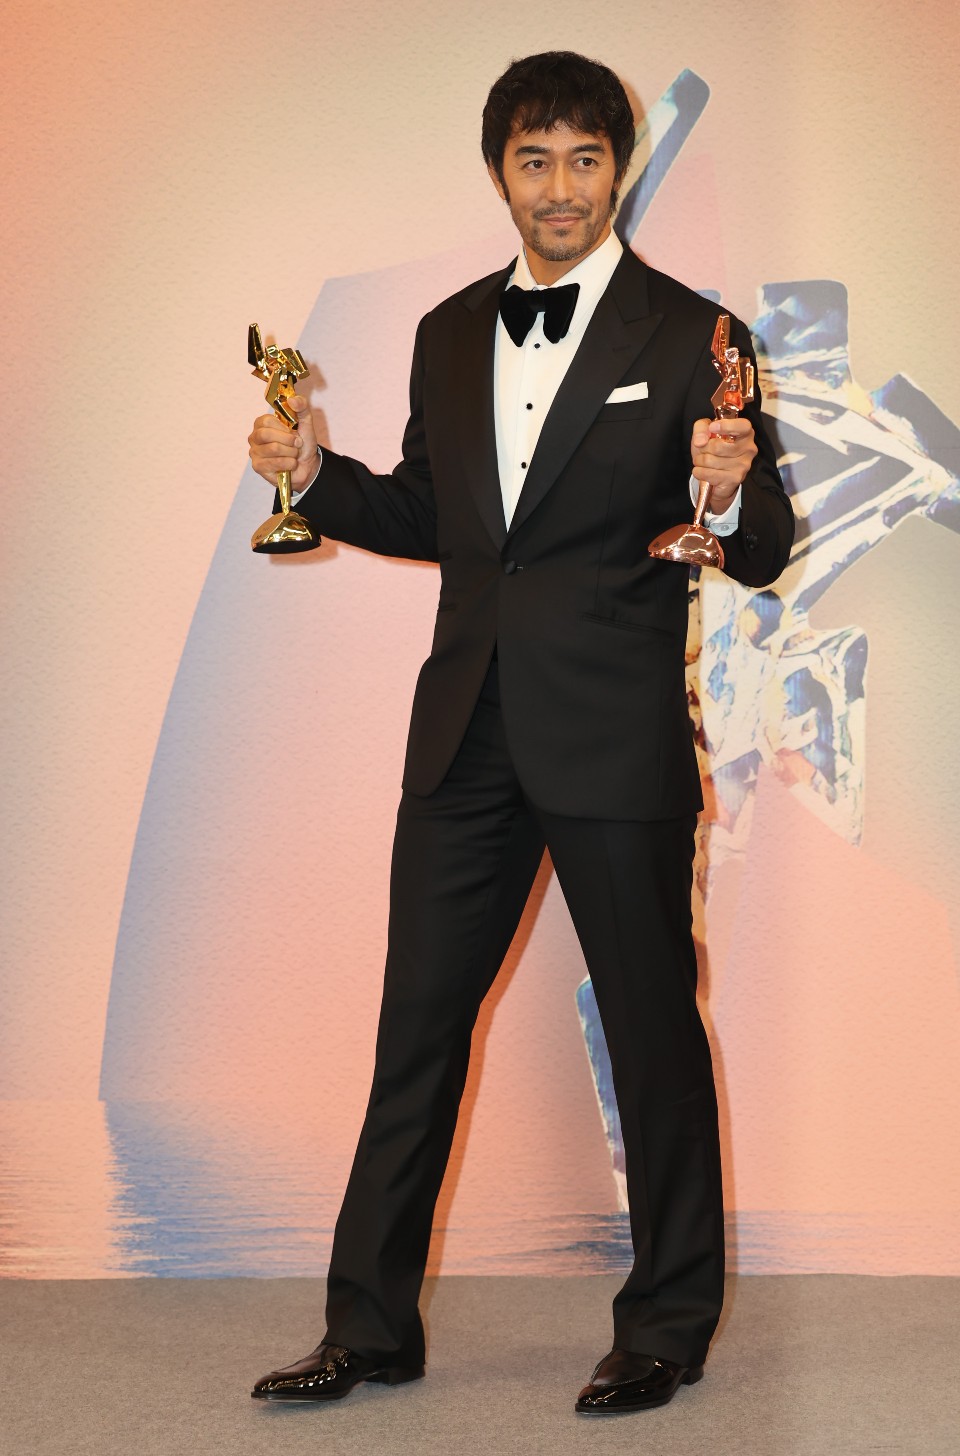 阿部寬獲頒卓越亞洲電影人大獎以及最佳衣著獎。